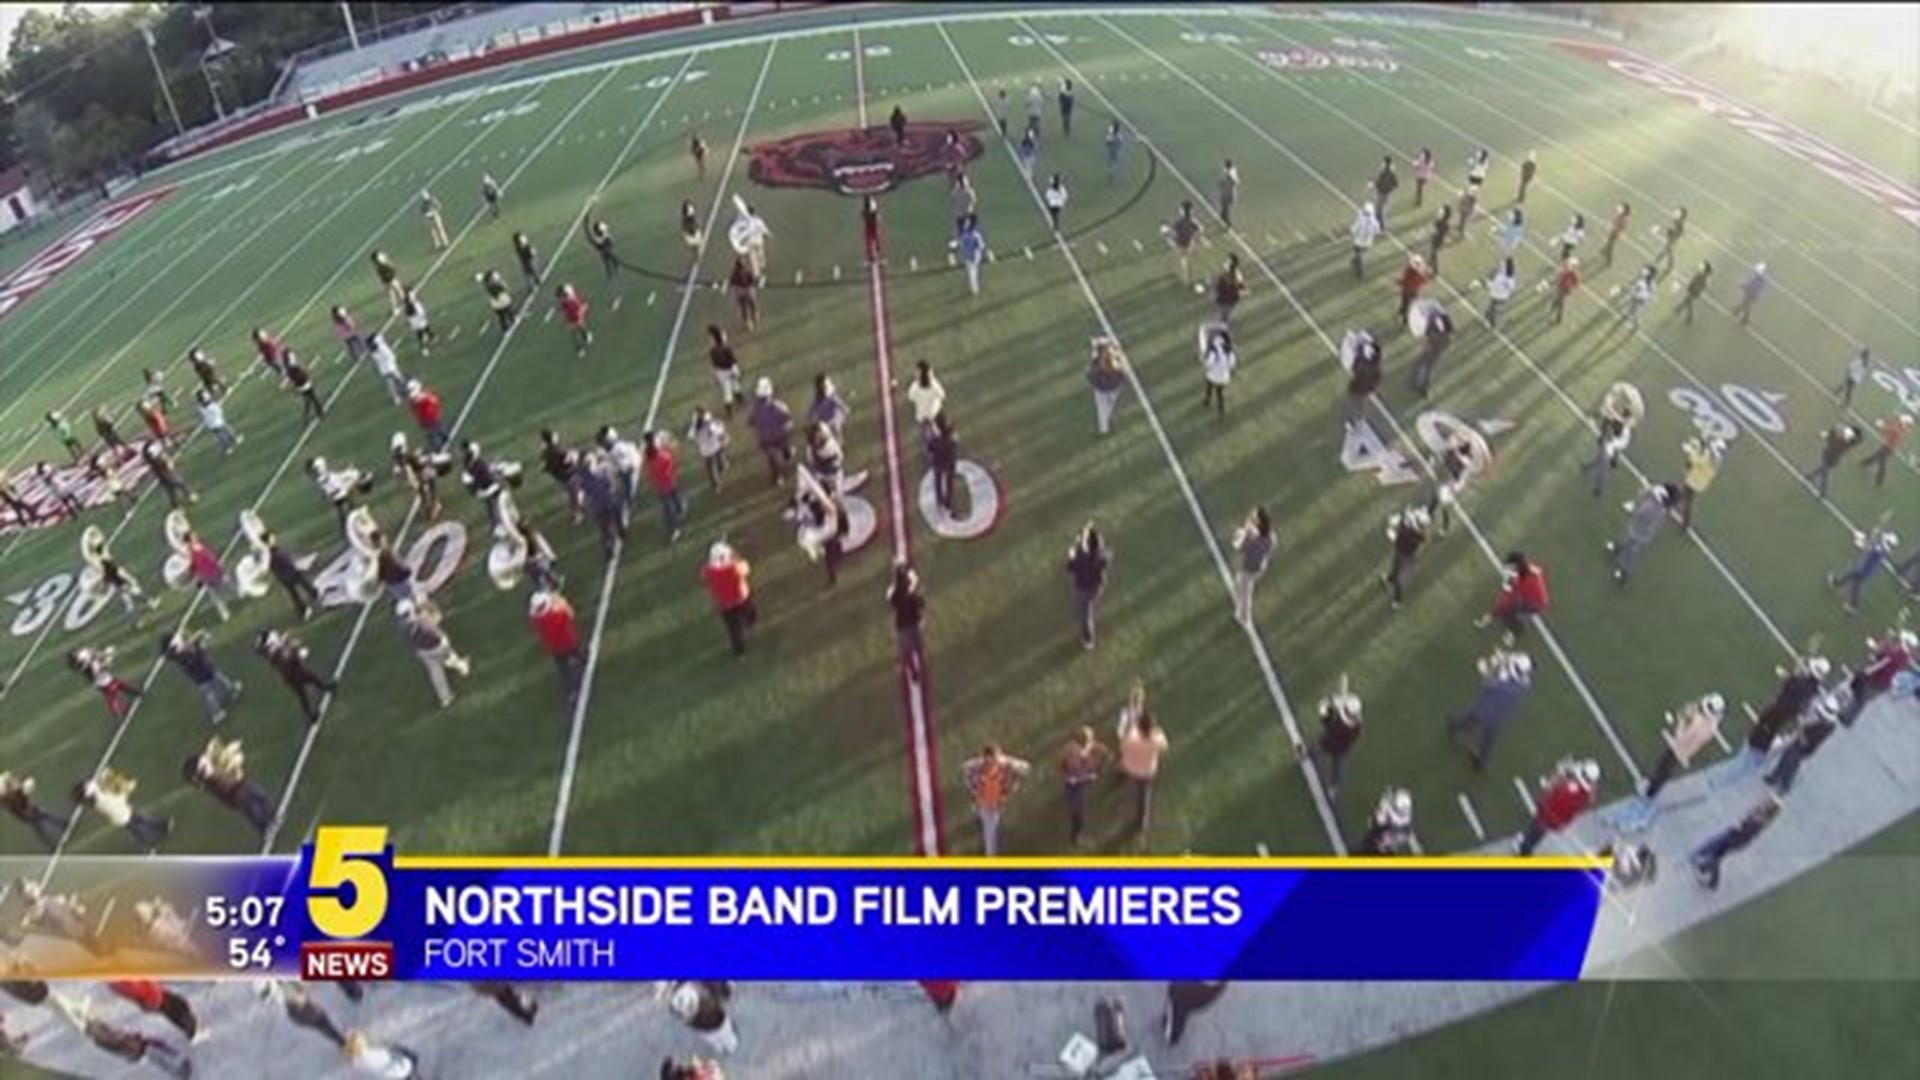 Northside Band Film Premieres